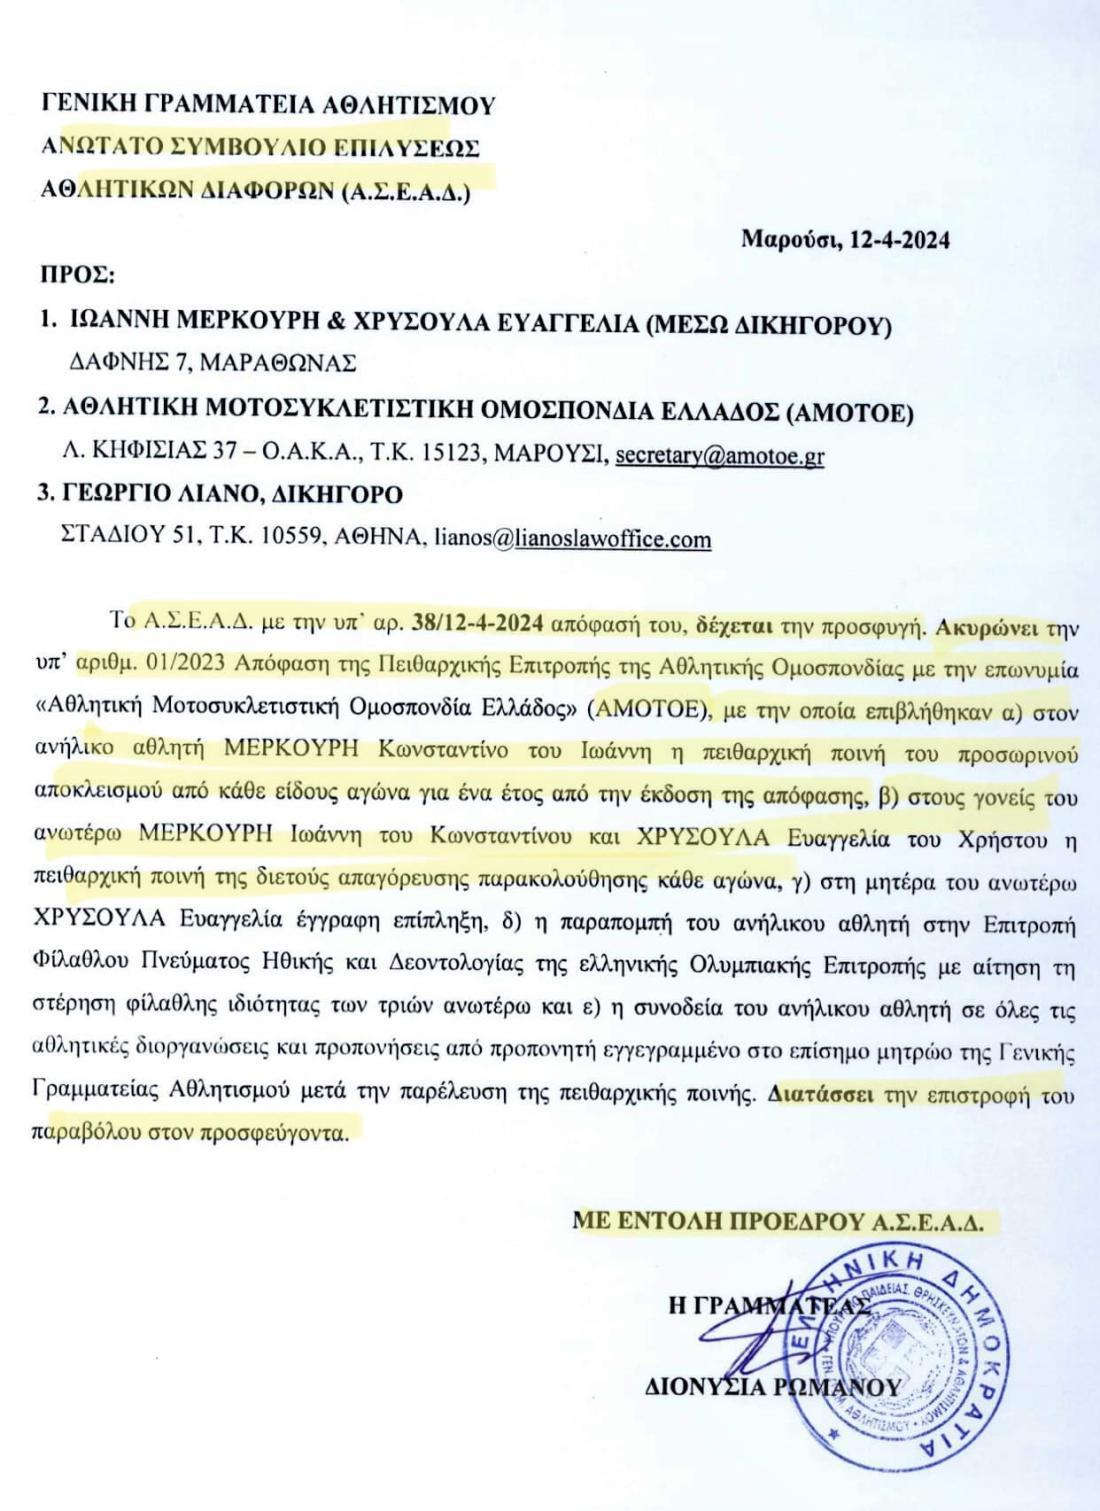 Το ΑΣΕΑΔ ακυρώνει την ποινή που επέβαλλε η ΑΜΟΤΟΕ στον Κ. Μερκούρη